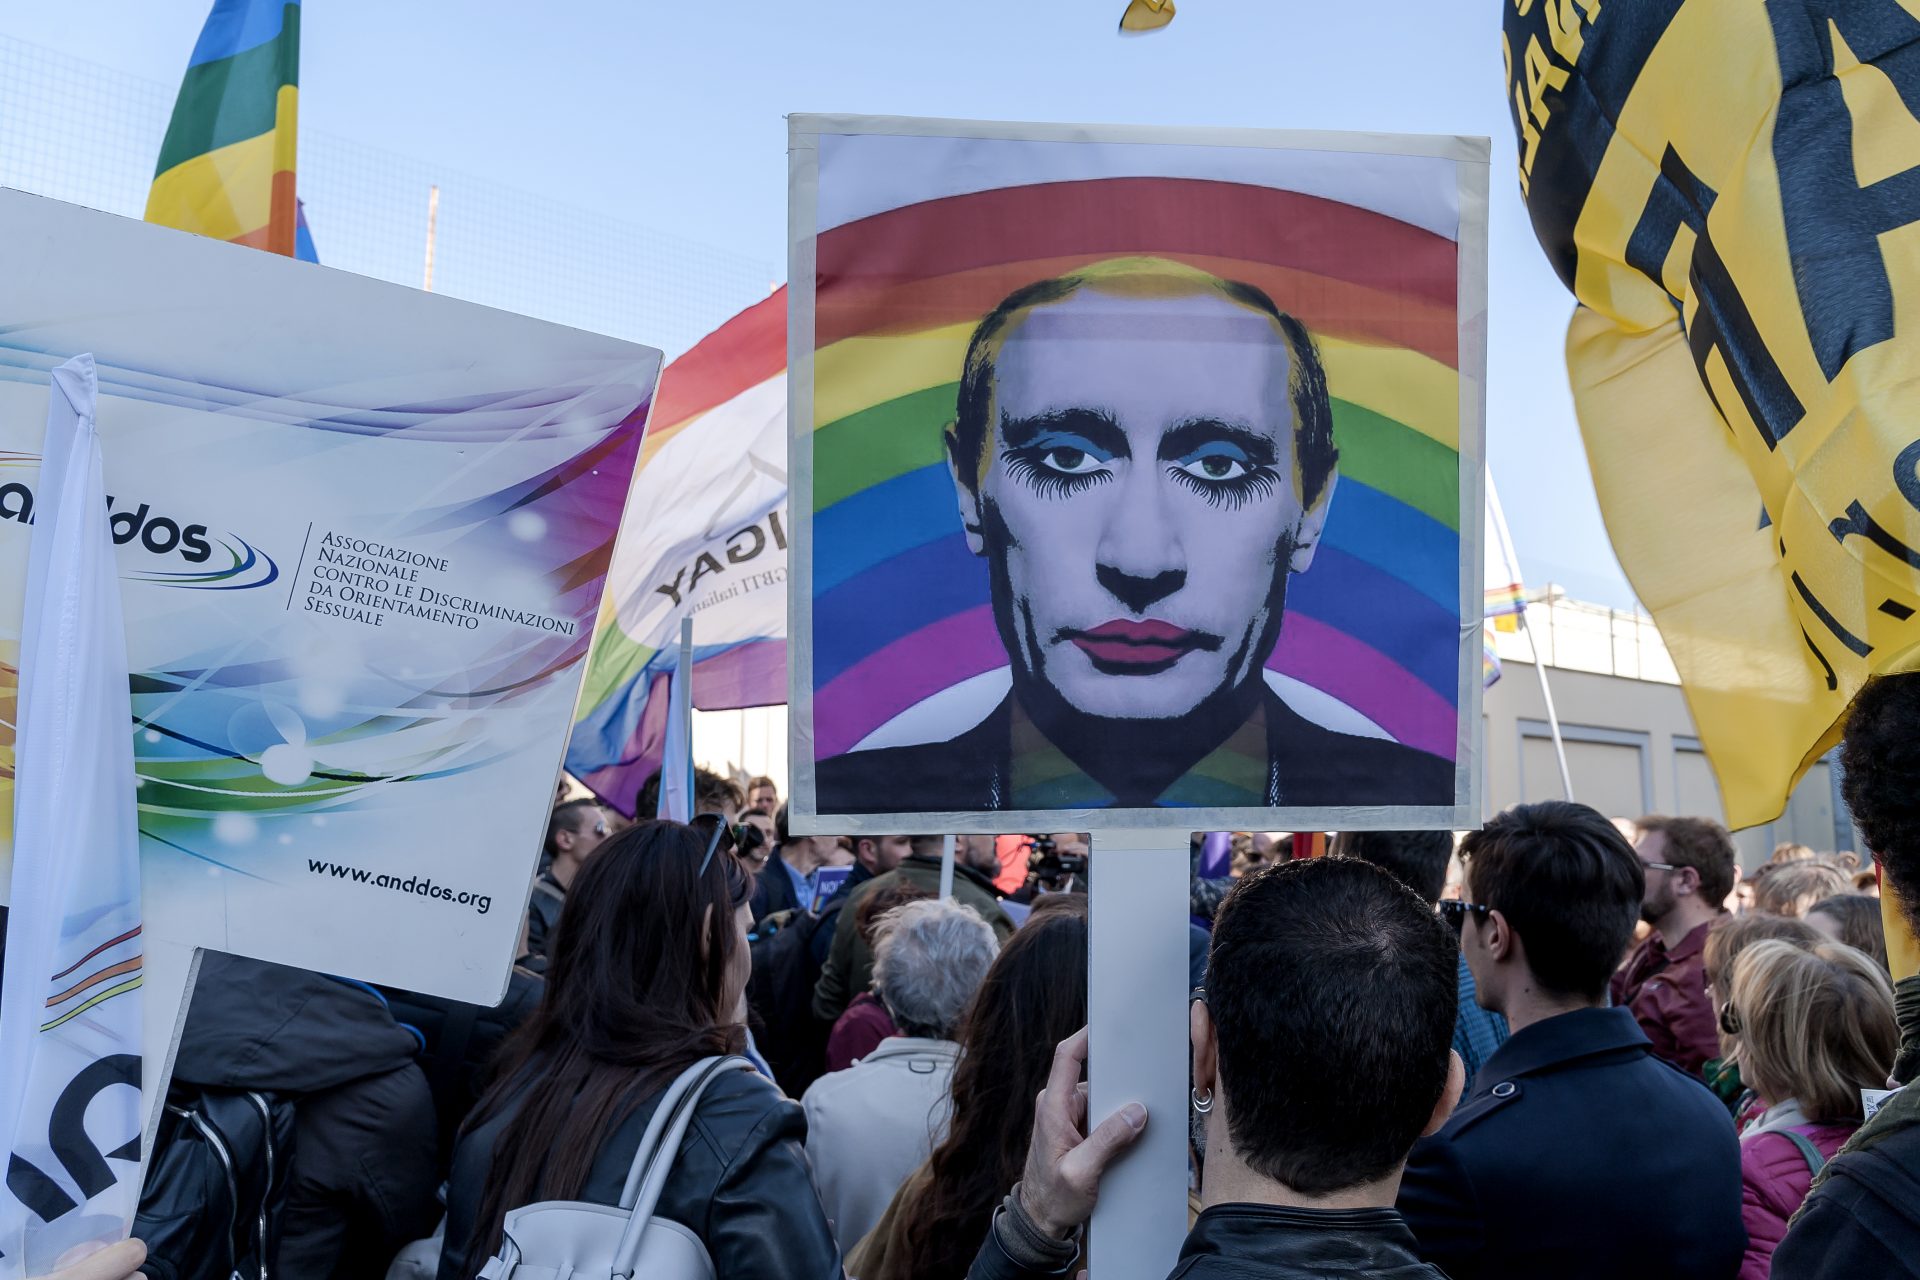 Putin's war on Russian LGBTQ+ community intensifies with new draconian law